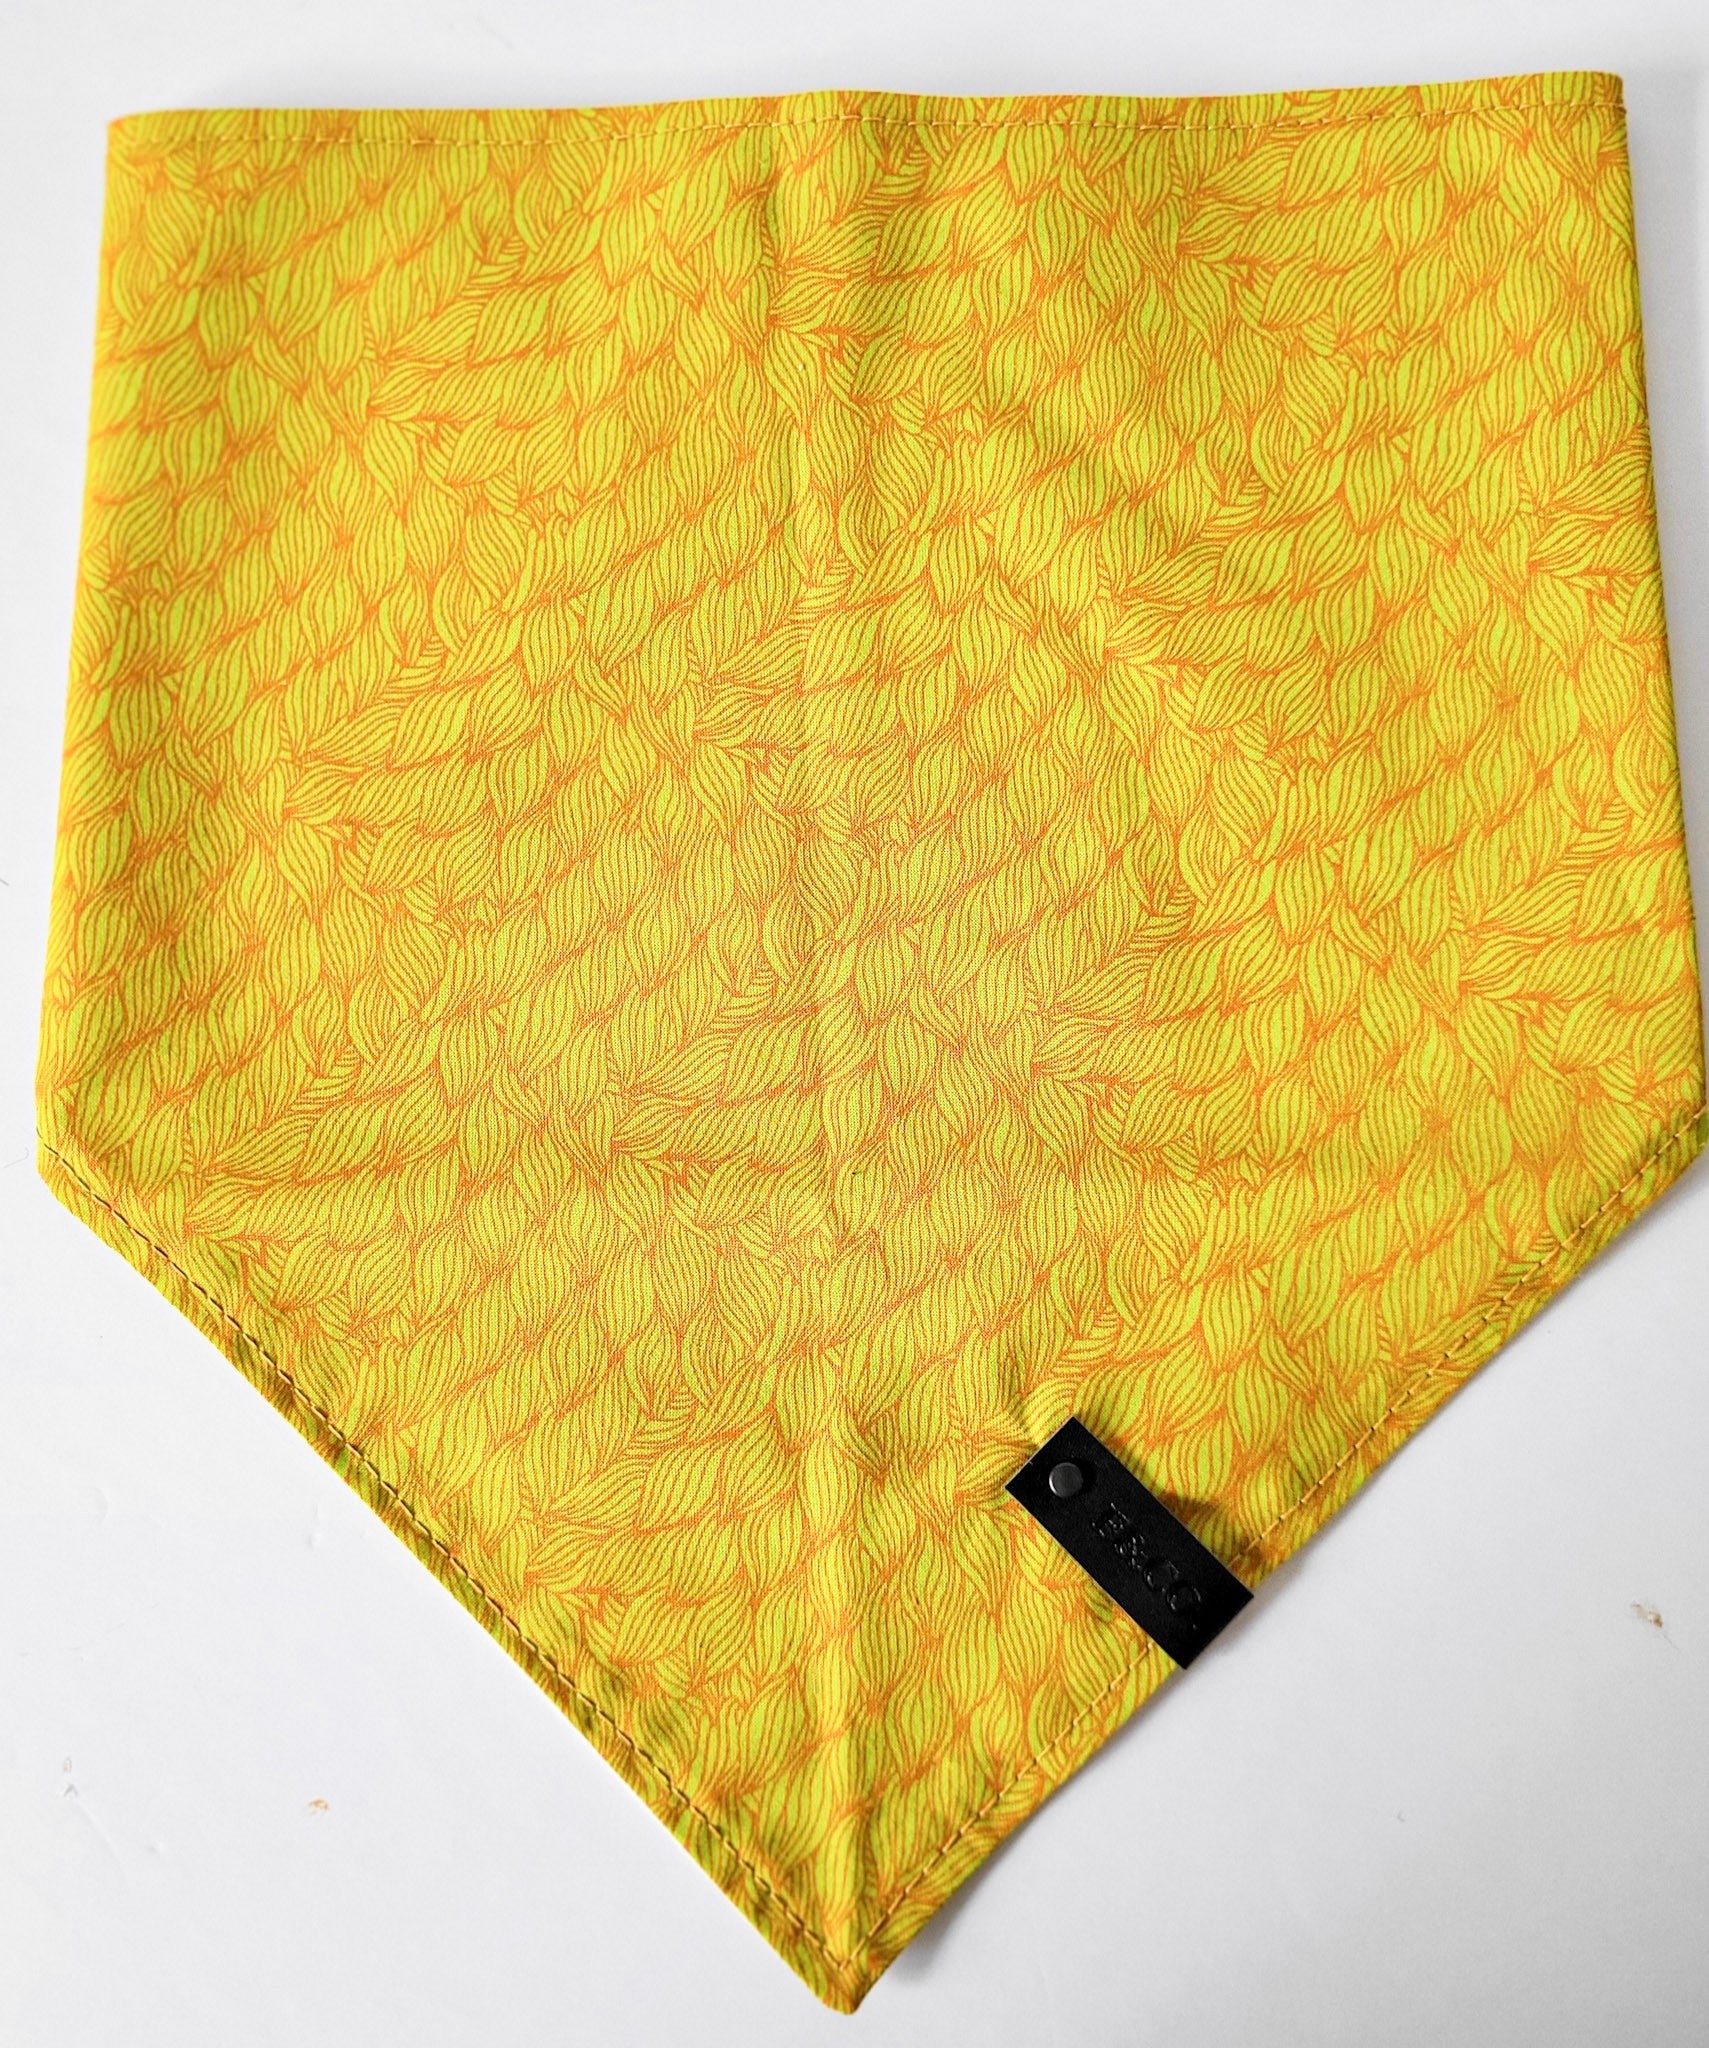 Bandanas déplié en coton tissé jaune orangé aux motifs abstraits. garni de notre étiquette de cuir végan noir